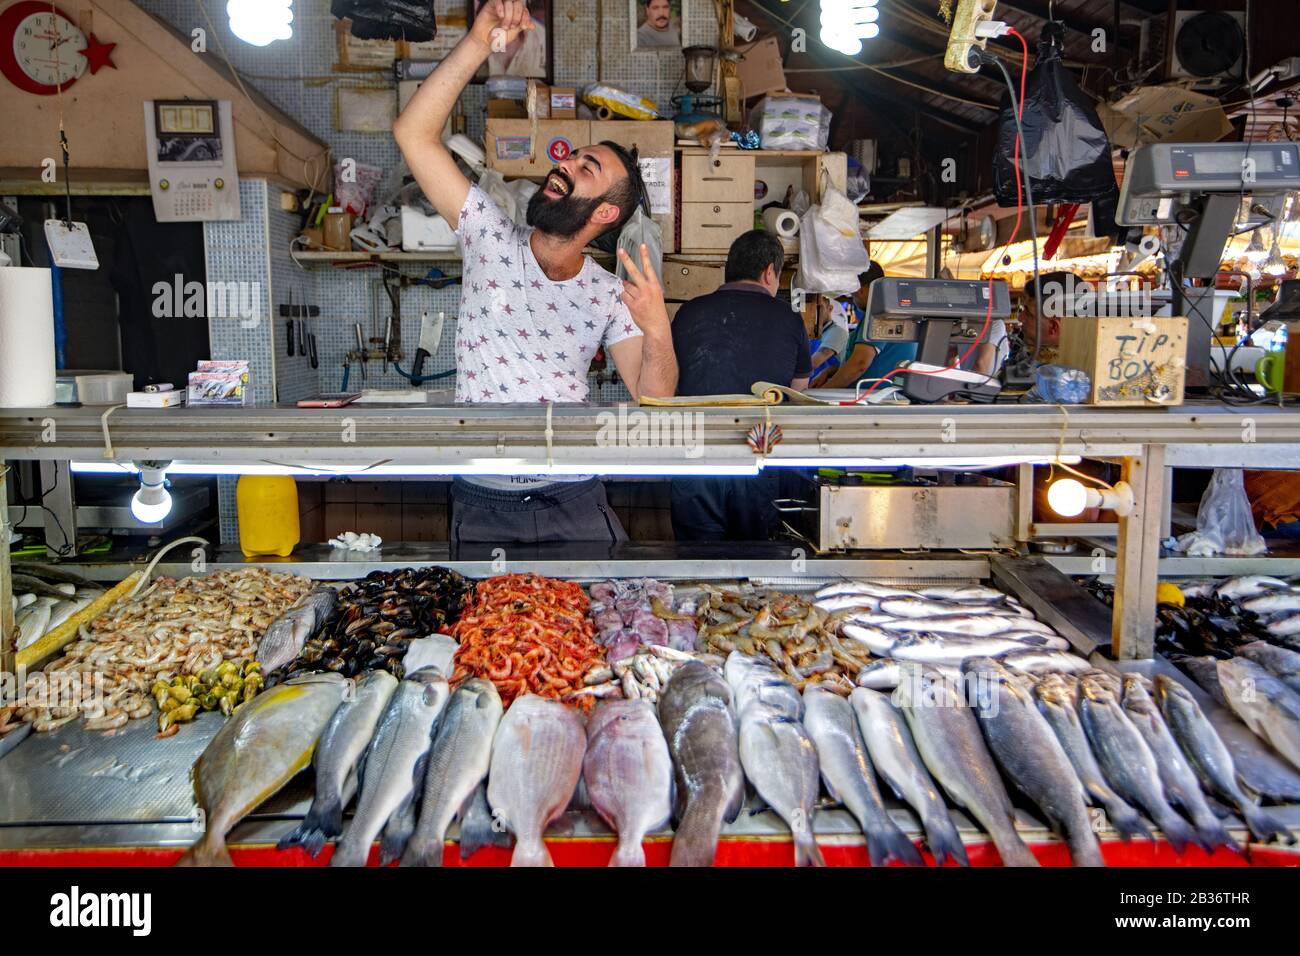 Turkey, Mugla province, Fethiye, fish market Stock Photo